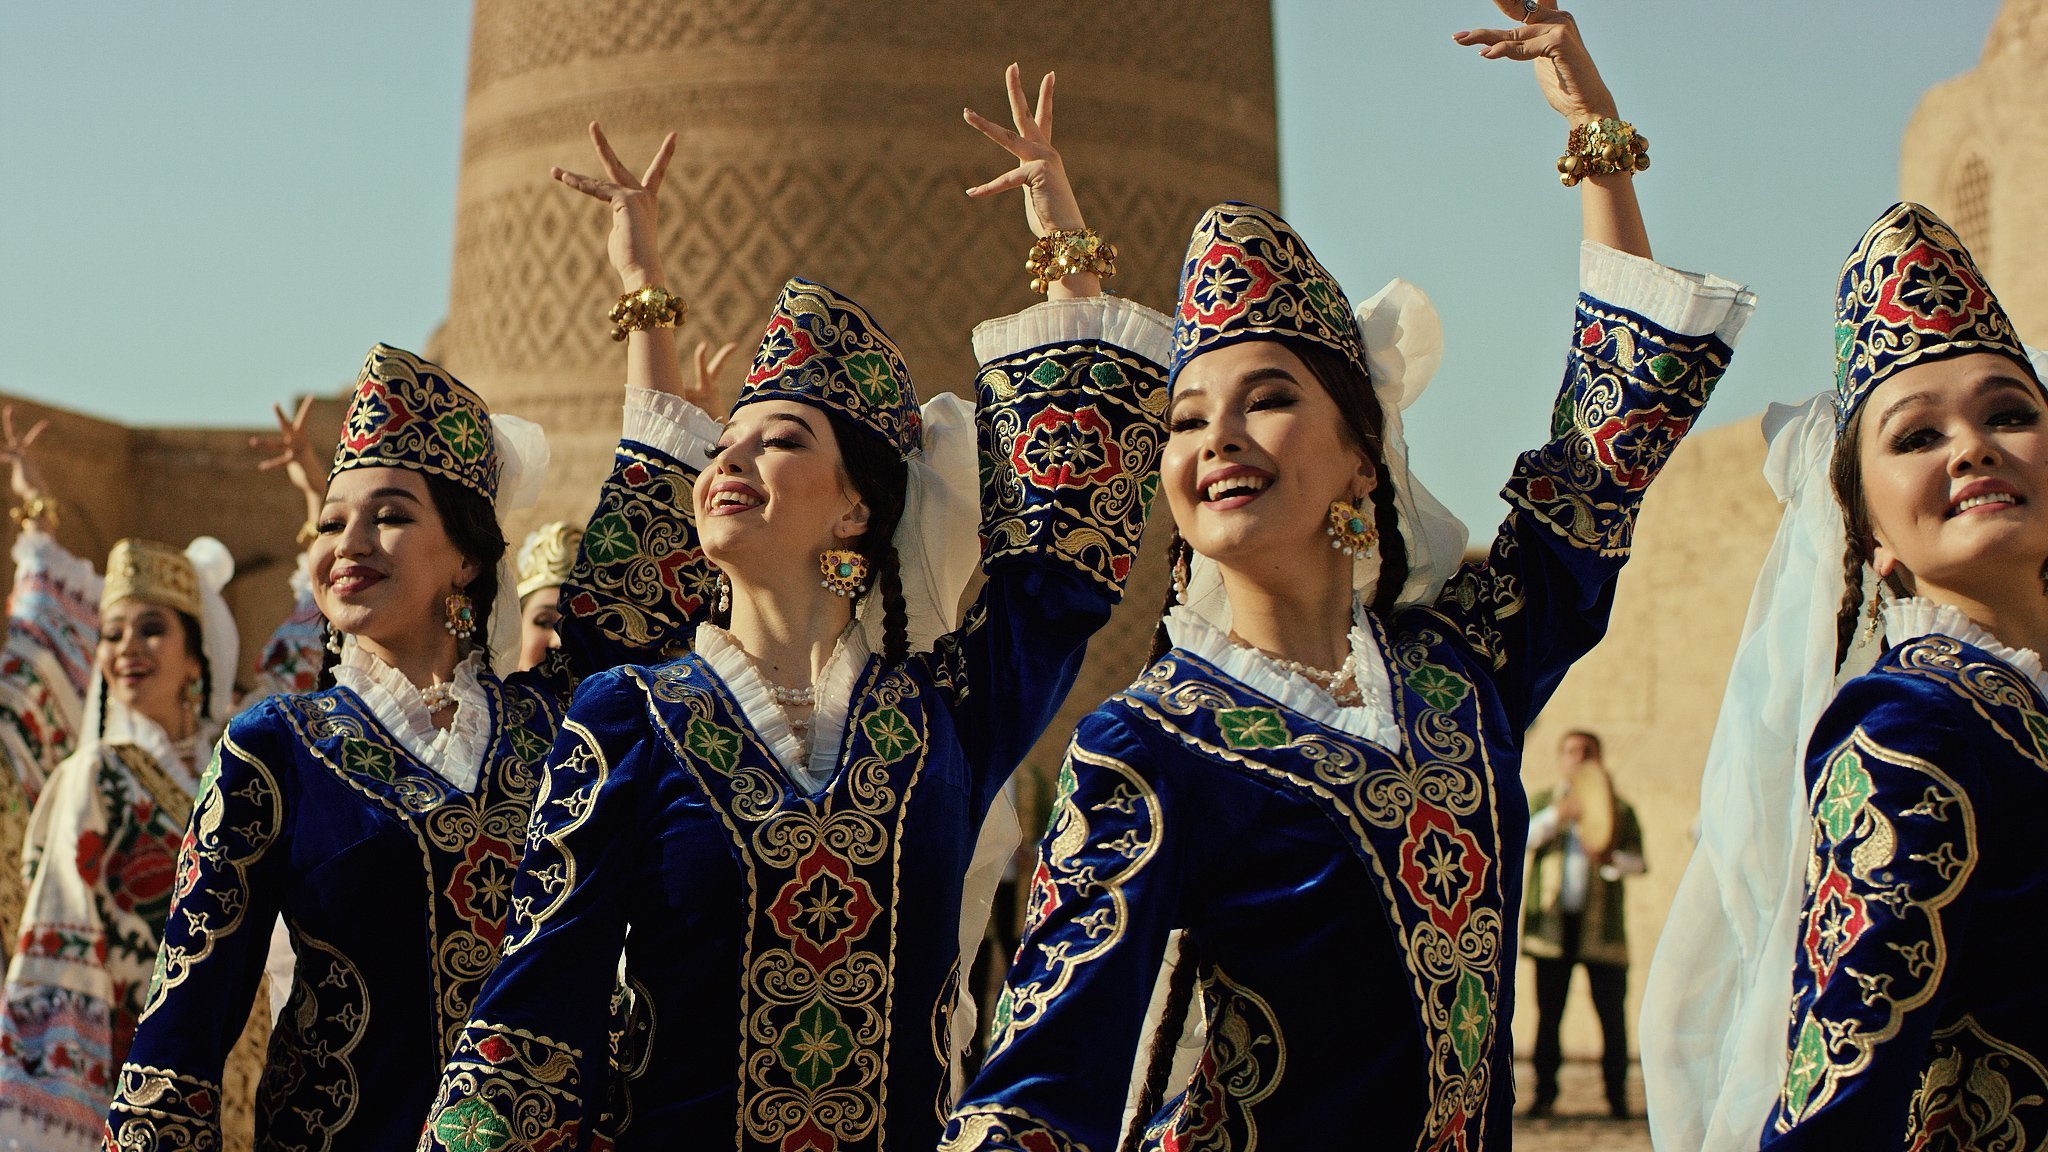 Период узбекски. Узбекский национальный костюм Хорезм. Национальные танцы Узбекистана. Узбекские национальные танцы. Узбекские женщины.